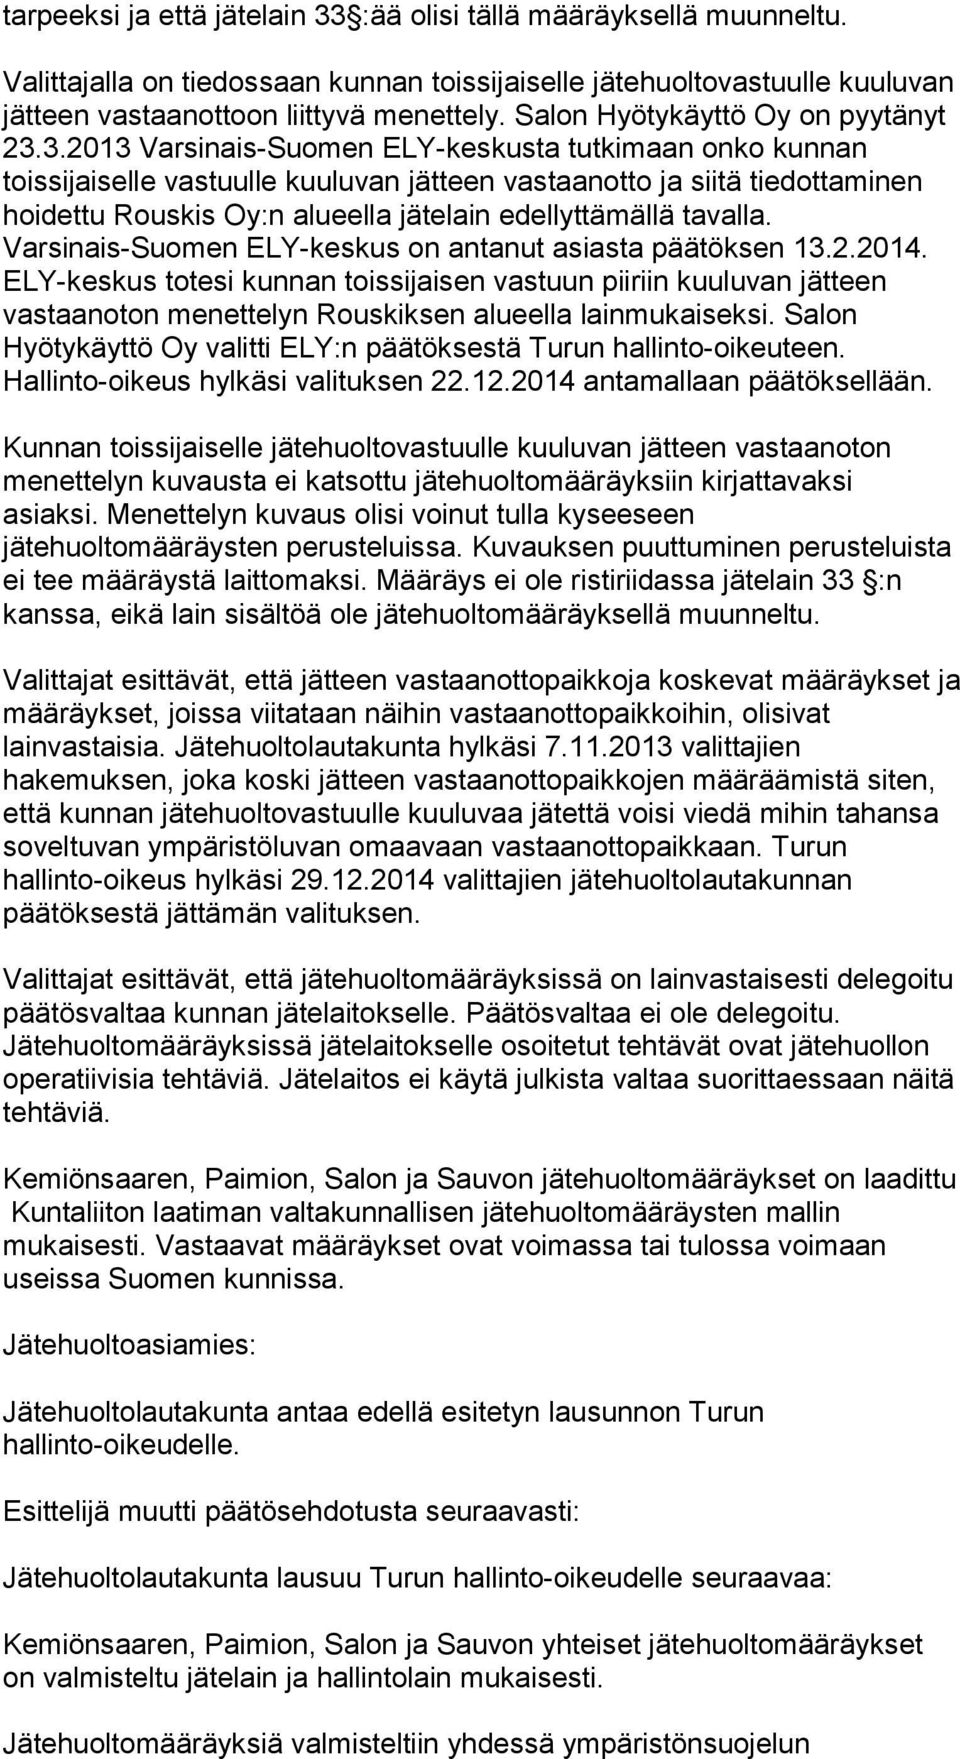 3.2013 Varsinais-Suomen ELY-keskusta tutkimaan onko kunnan toissijaiselle vastuulle kuuluvan jätteen vastaanotto ja siitä tiedottaminen hoidettu Rouskis Oy:n alueella jätelain edellyttämällä tavalla.